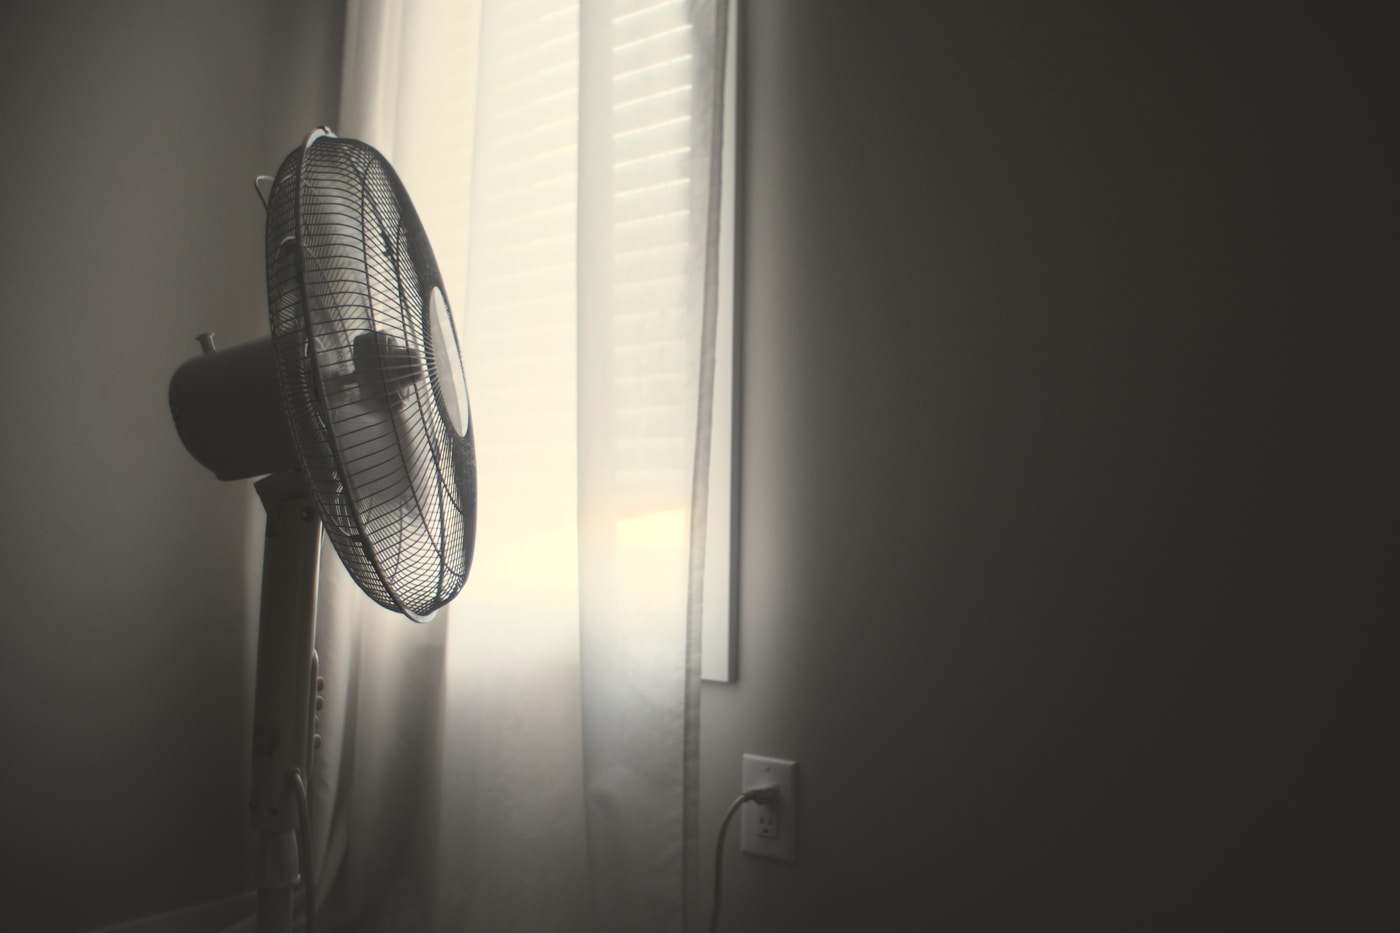 Dormir com ventilador ligado pode desenvolver doenças, alerta especialista